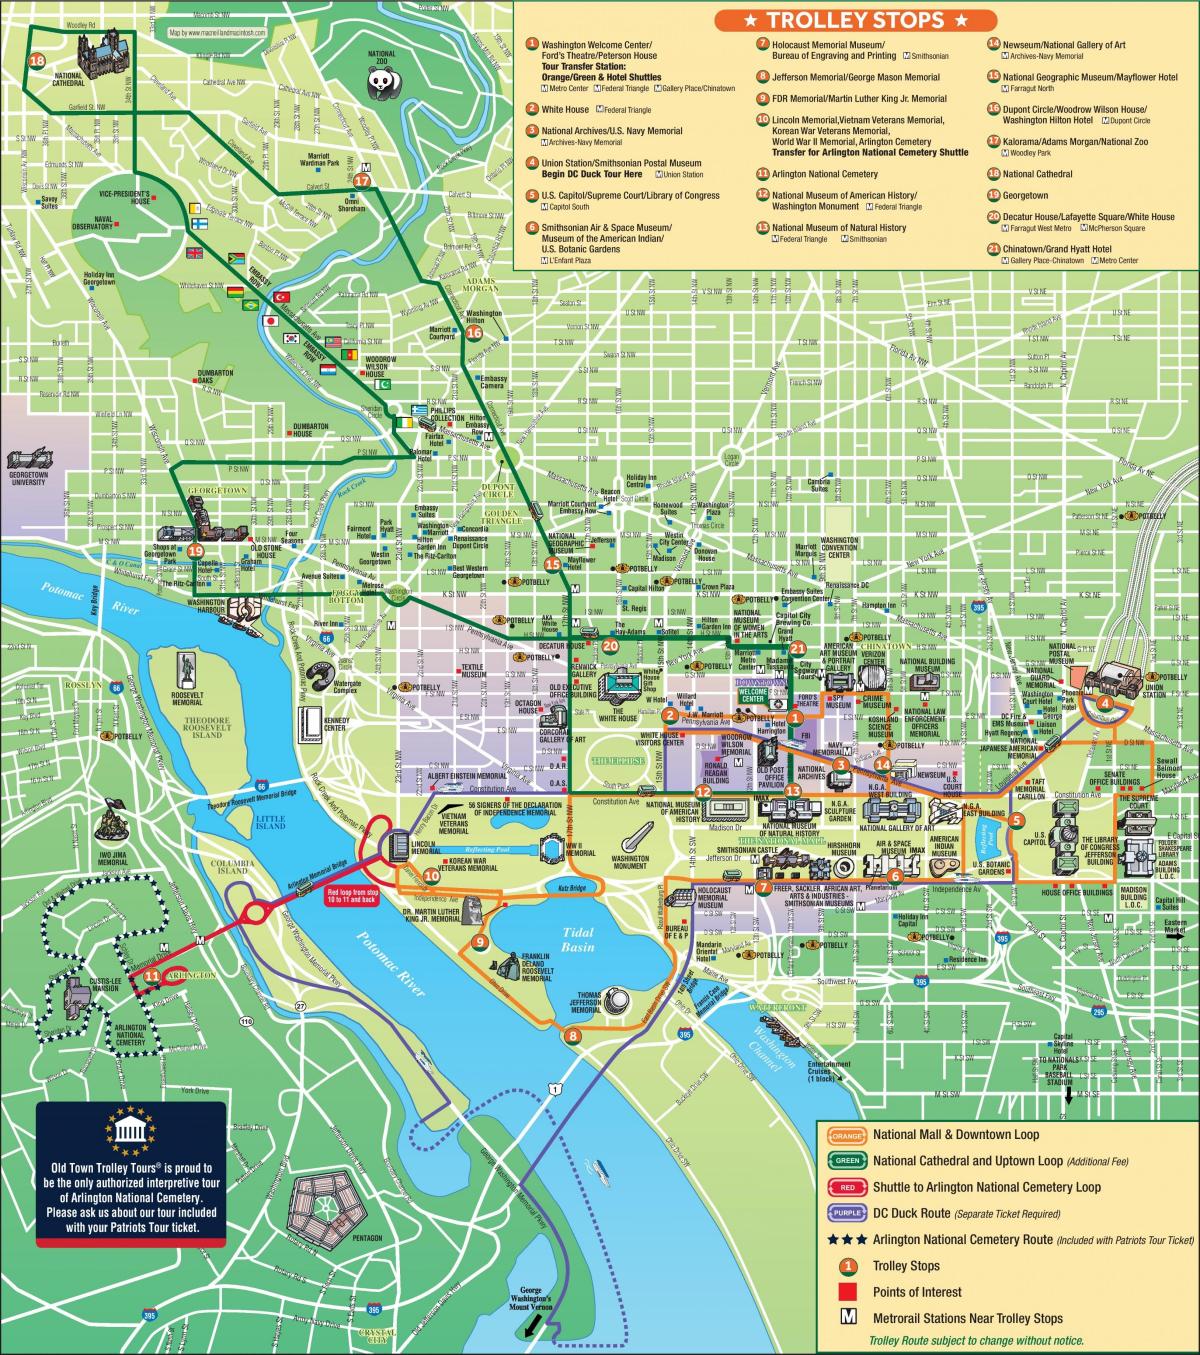 Plan des stations trolley de Washington DC